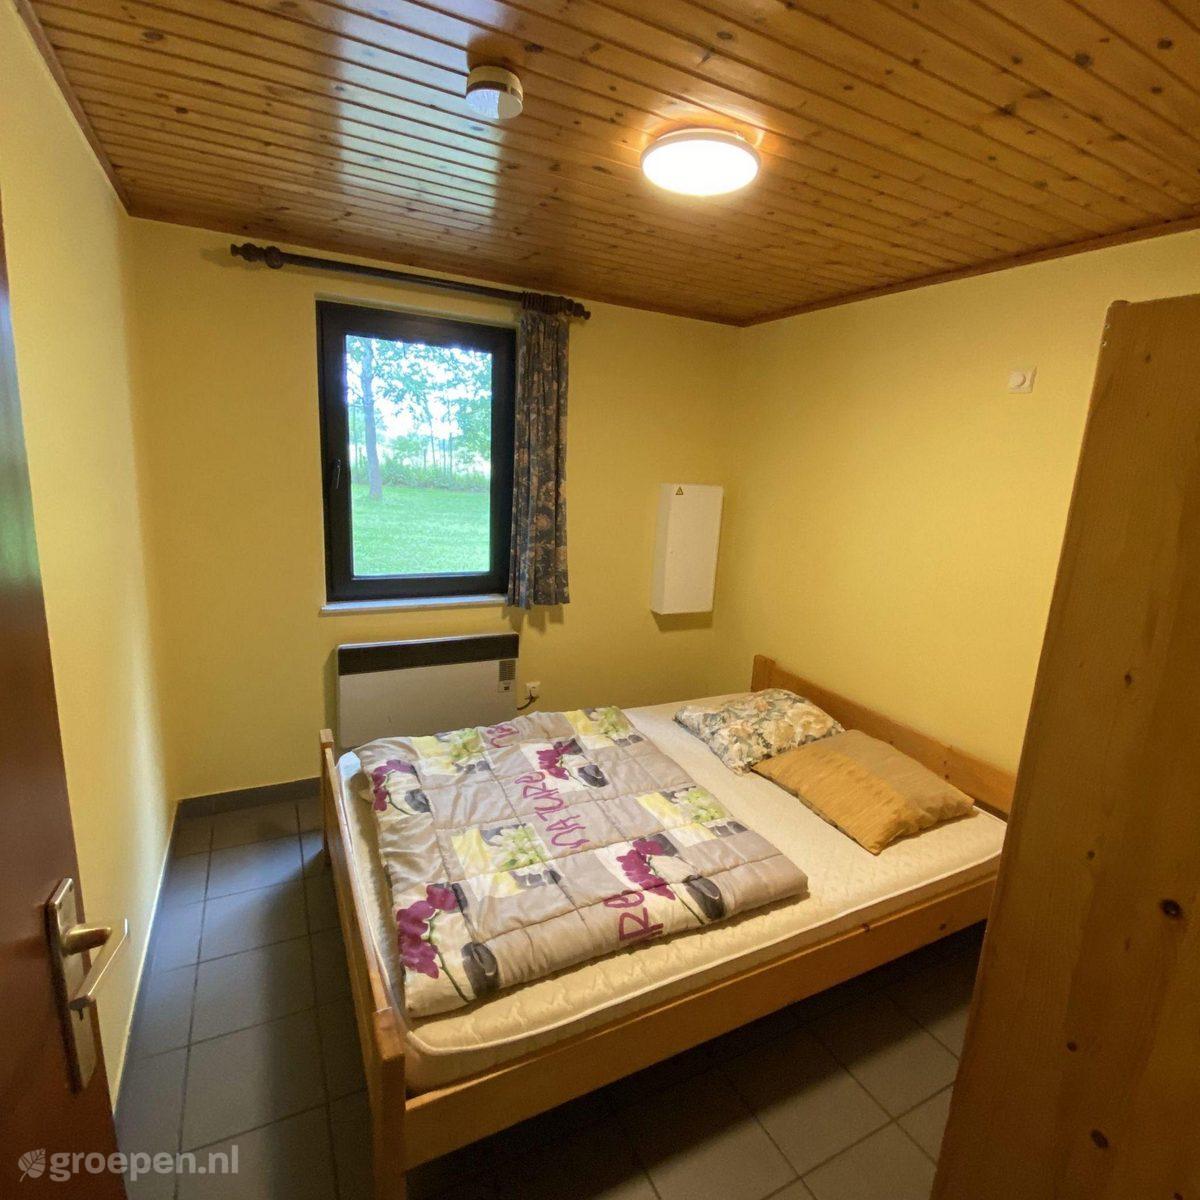 Group accommodation Houffalize